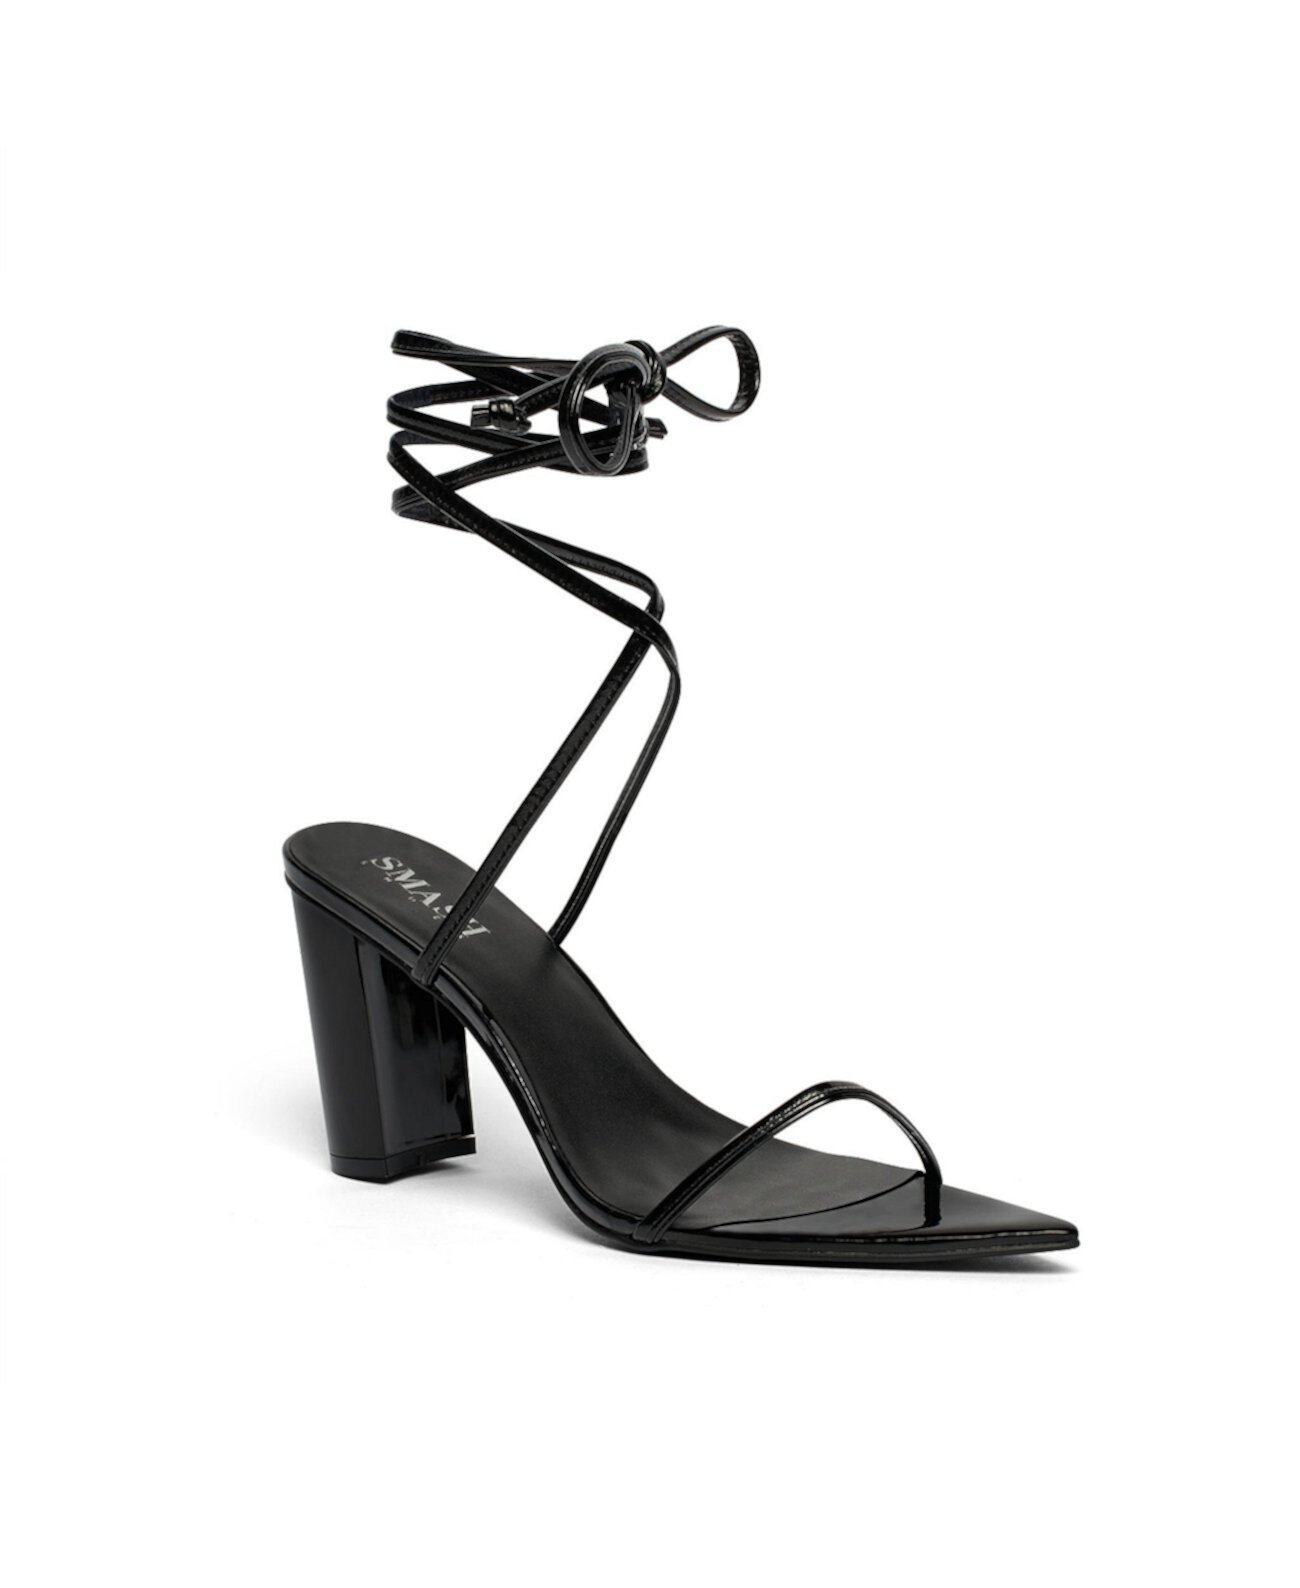 Женские классические сандалии Onyx с ремешком вокруг щиколотки — увеличенные размеры 10–14 SMASH Shoes